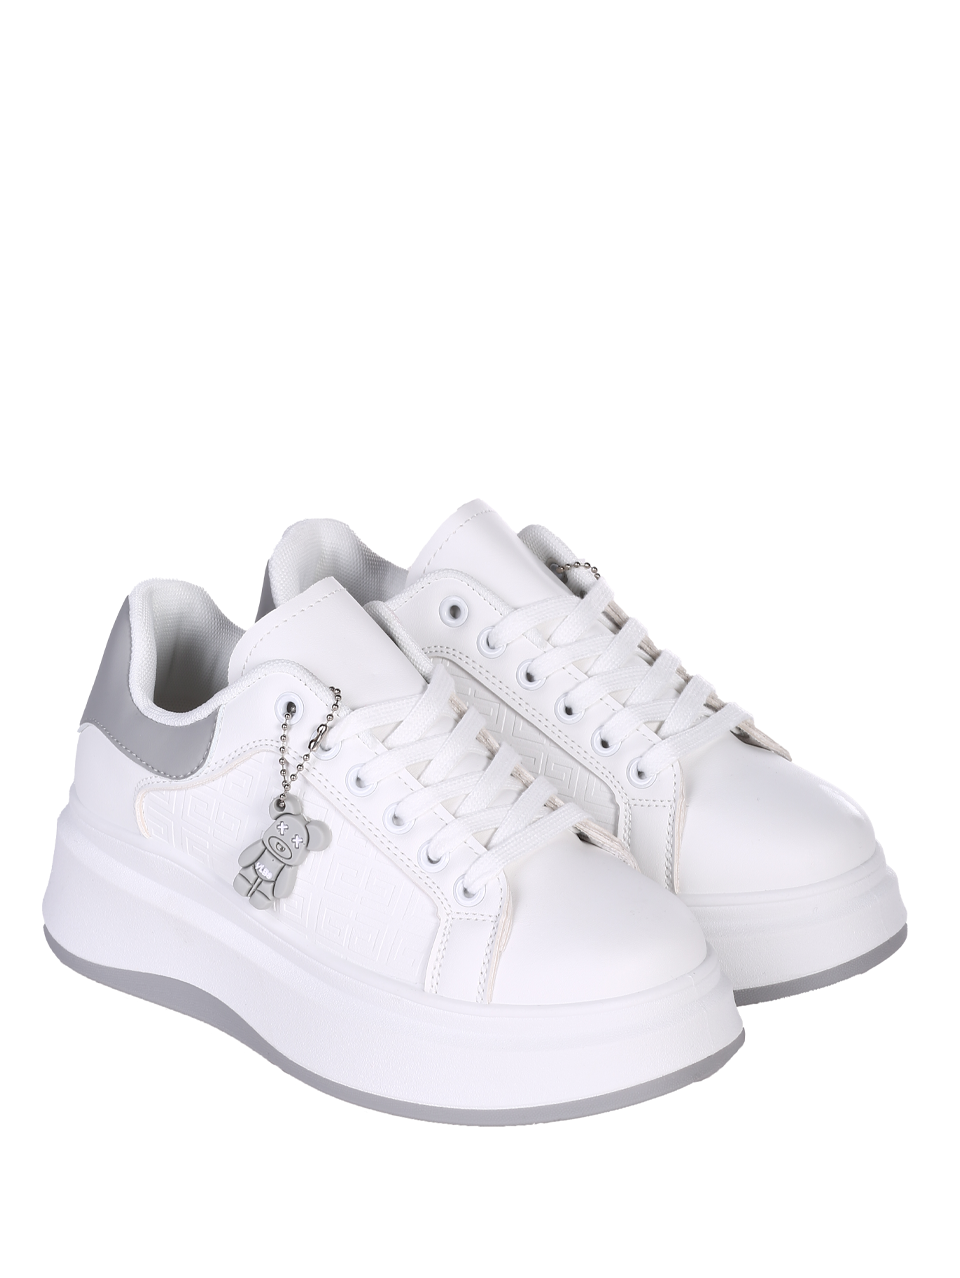 Ежедневни дамски обувки на платформа в бял/сив цвят 3U-24071 white/grey